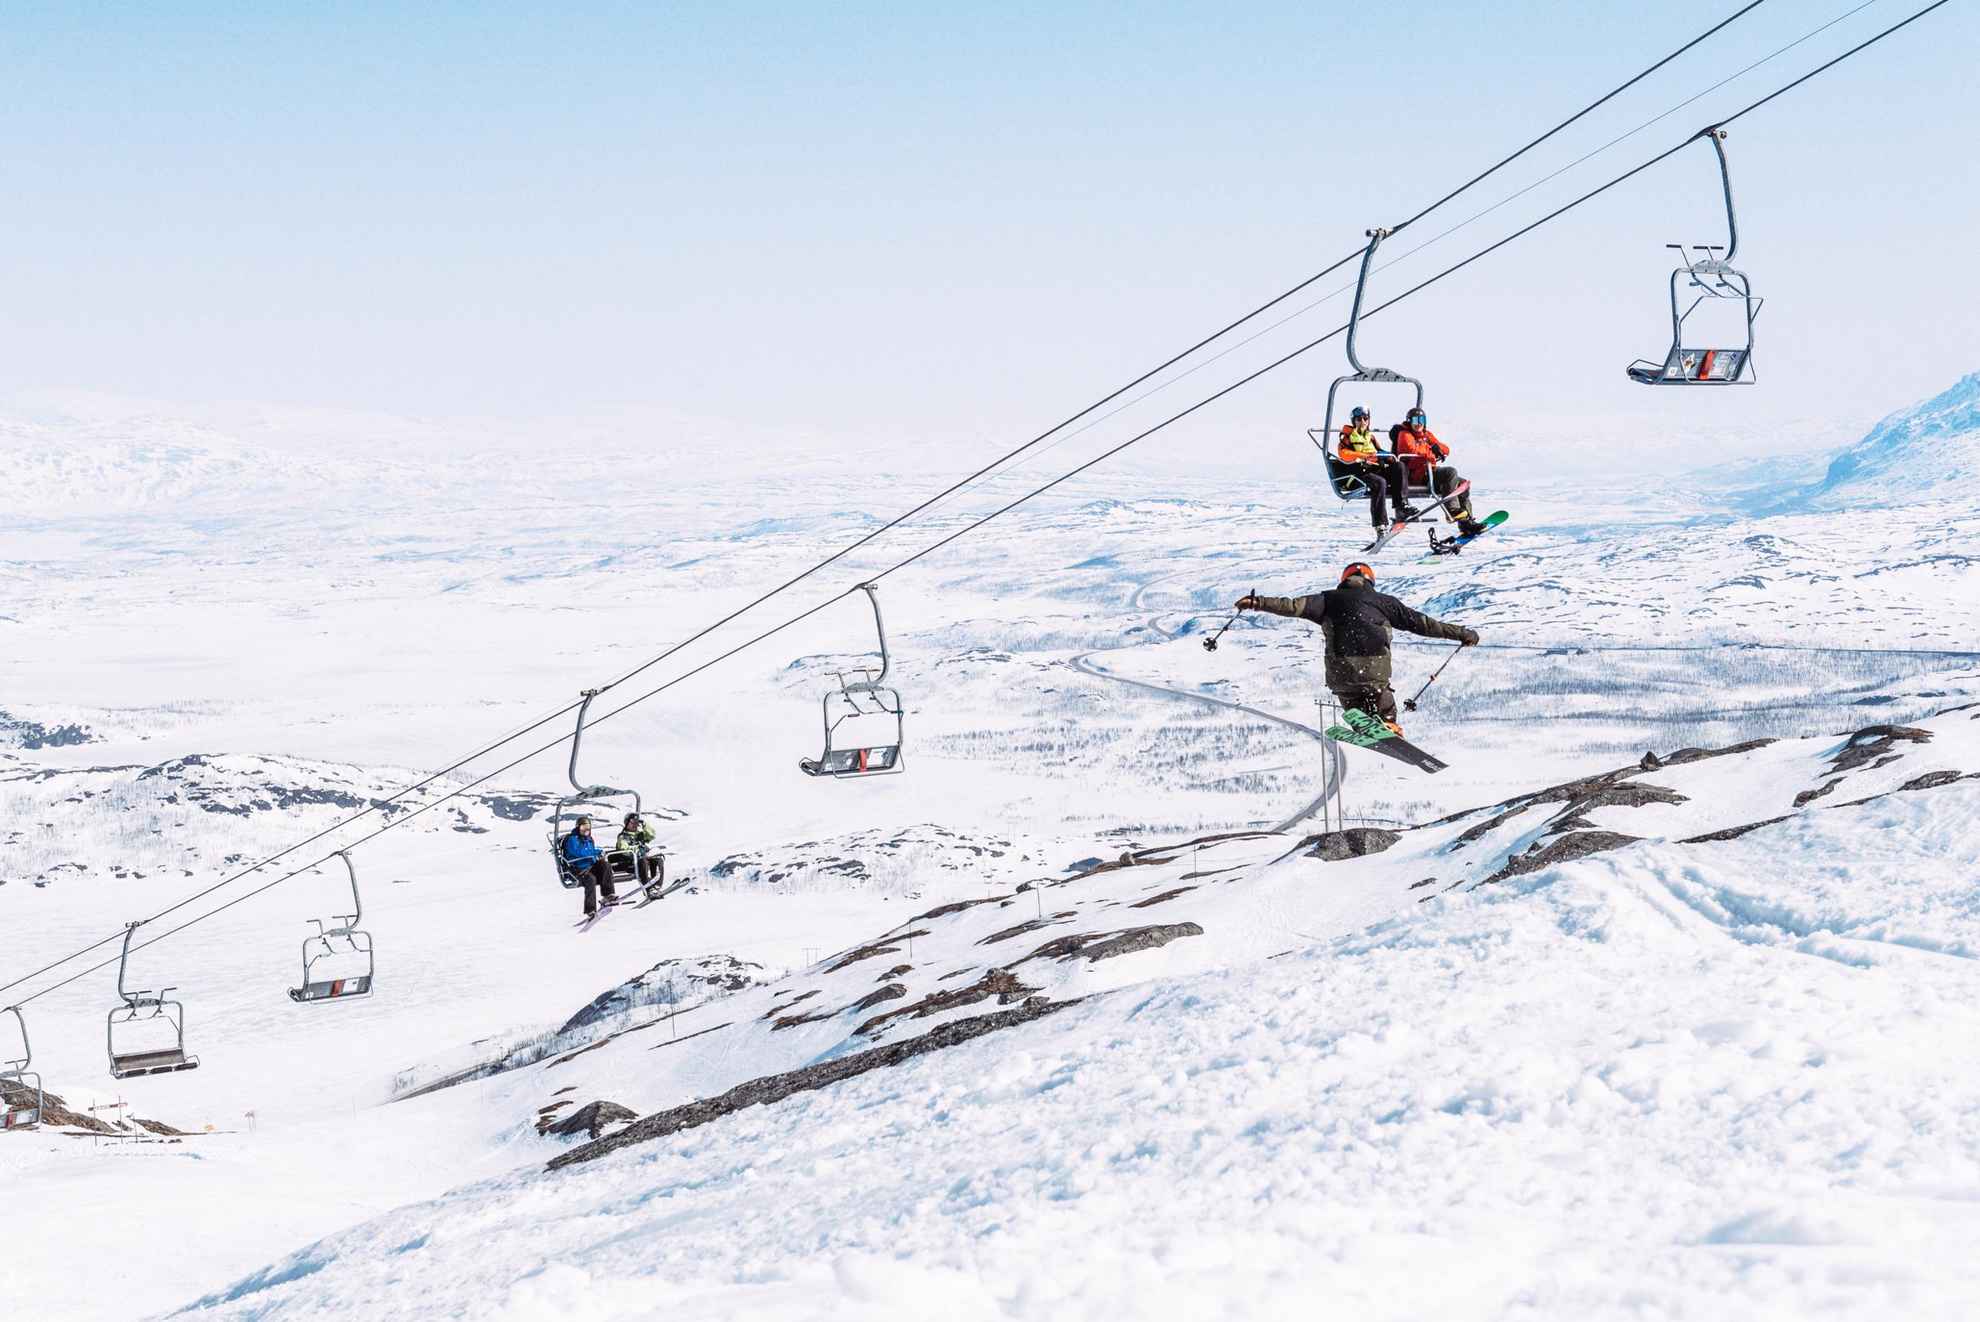 Mensen die op een skilift zitten en kijken naar een persoon die met ski's springt.